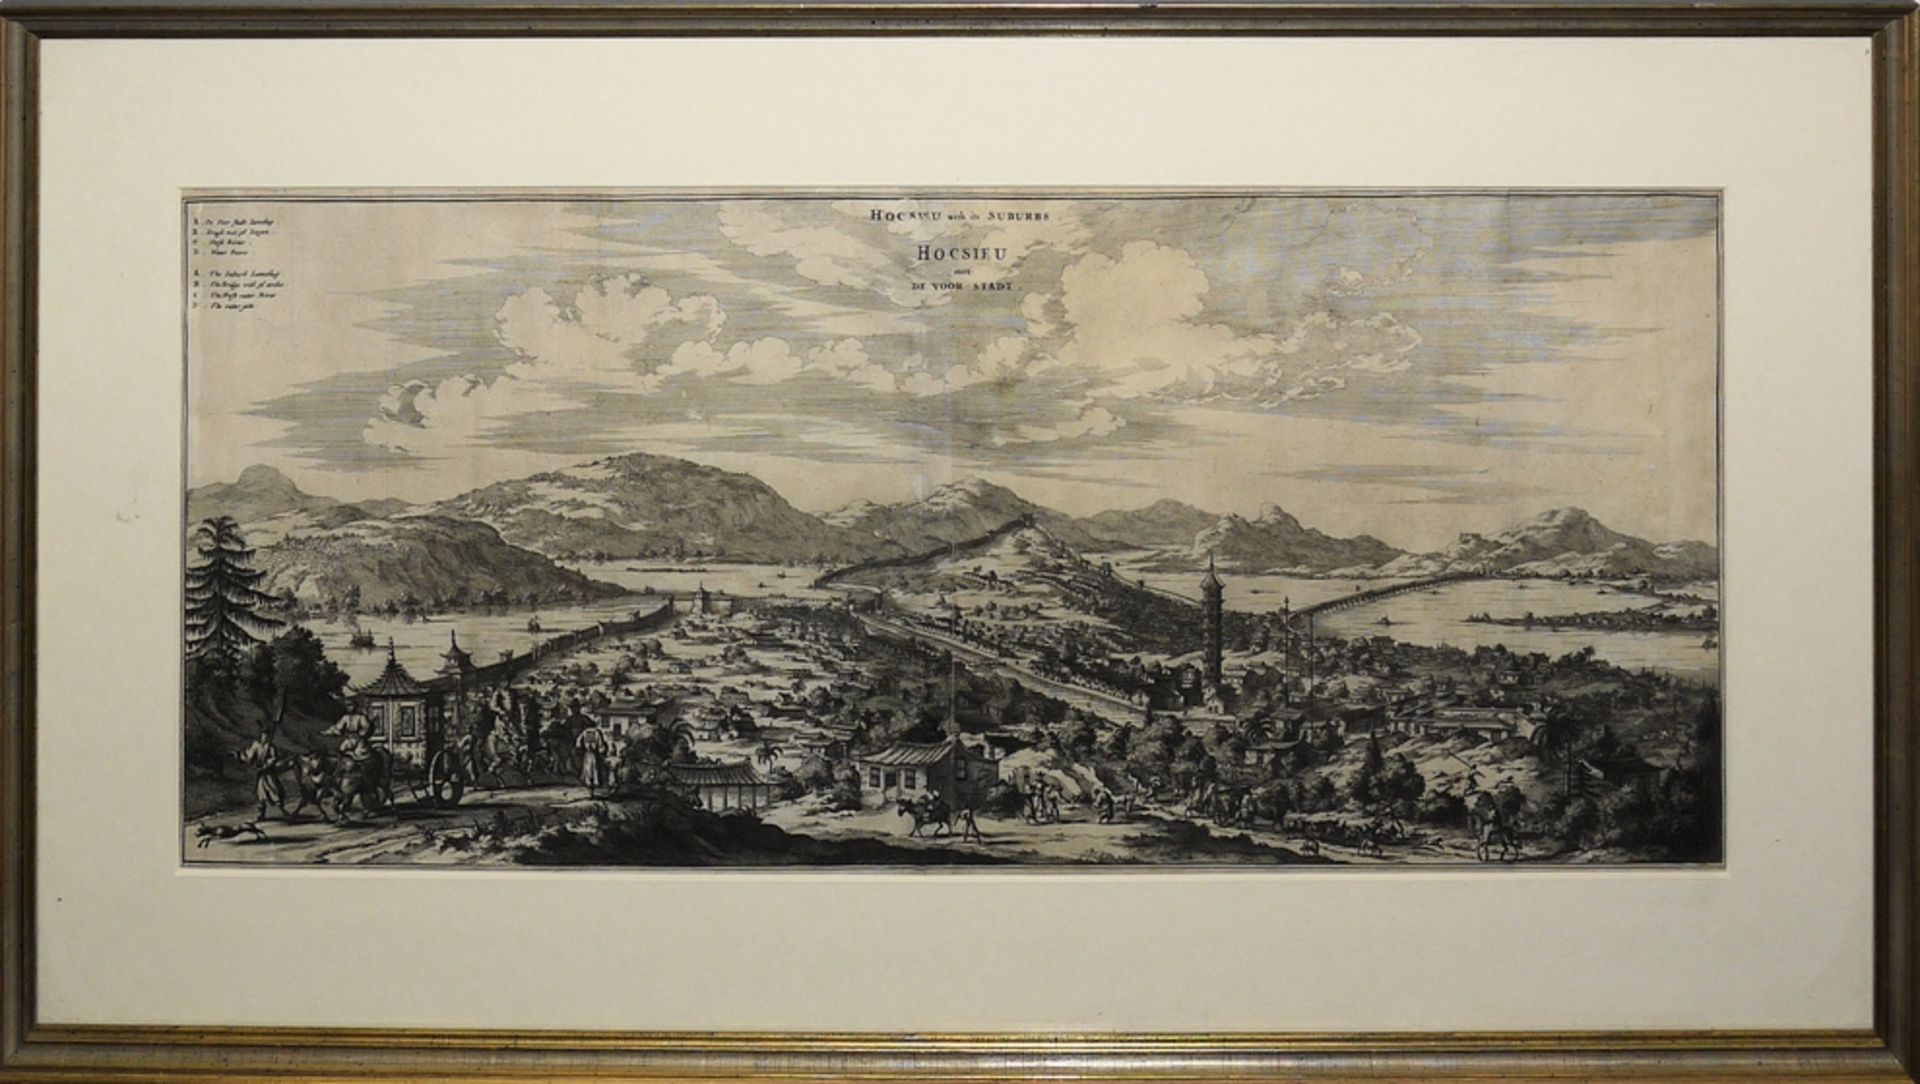 Johan Nieuhof, "Hocsieu with its suburbs / Hocsieu met de voor Stadt", view of the harbour city of 